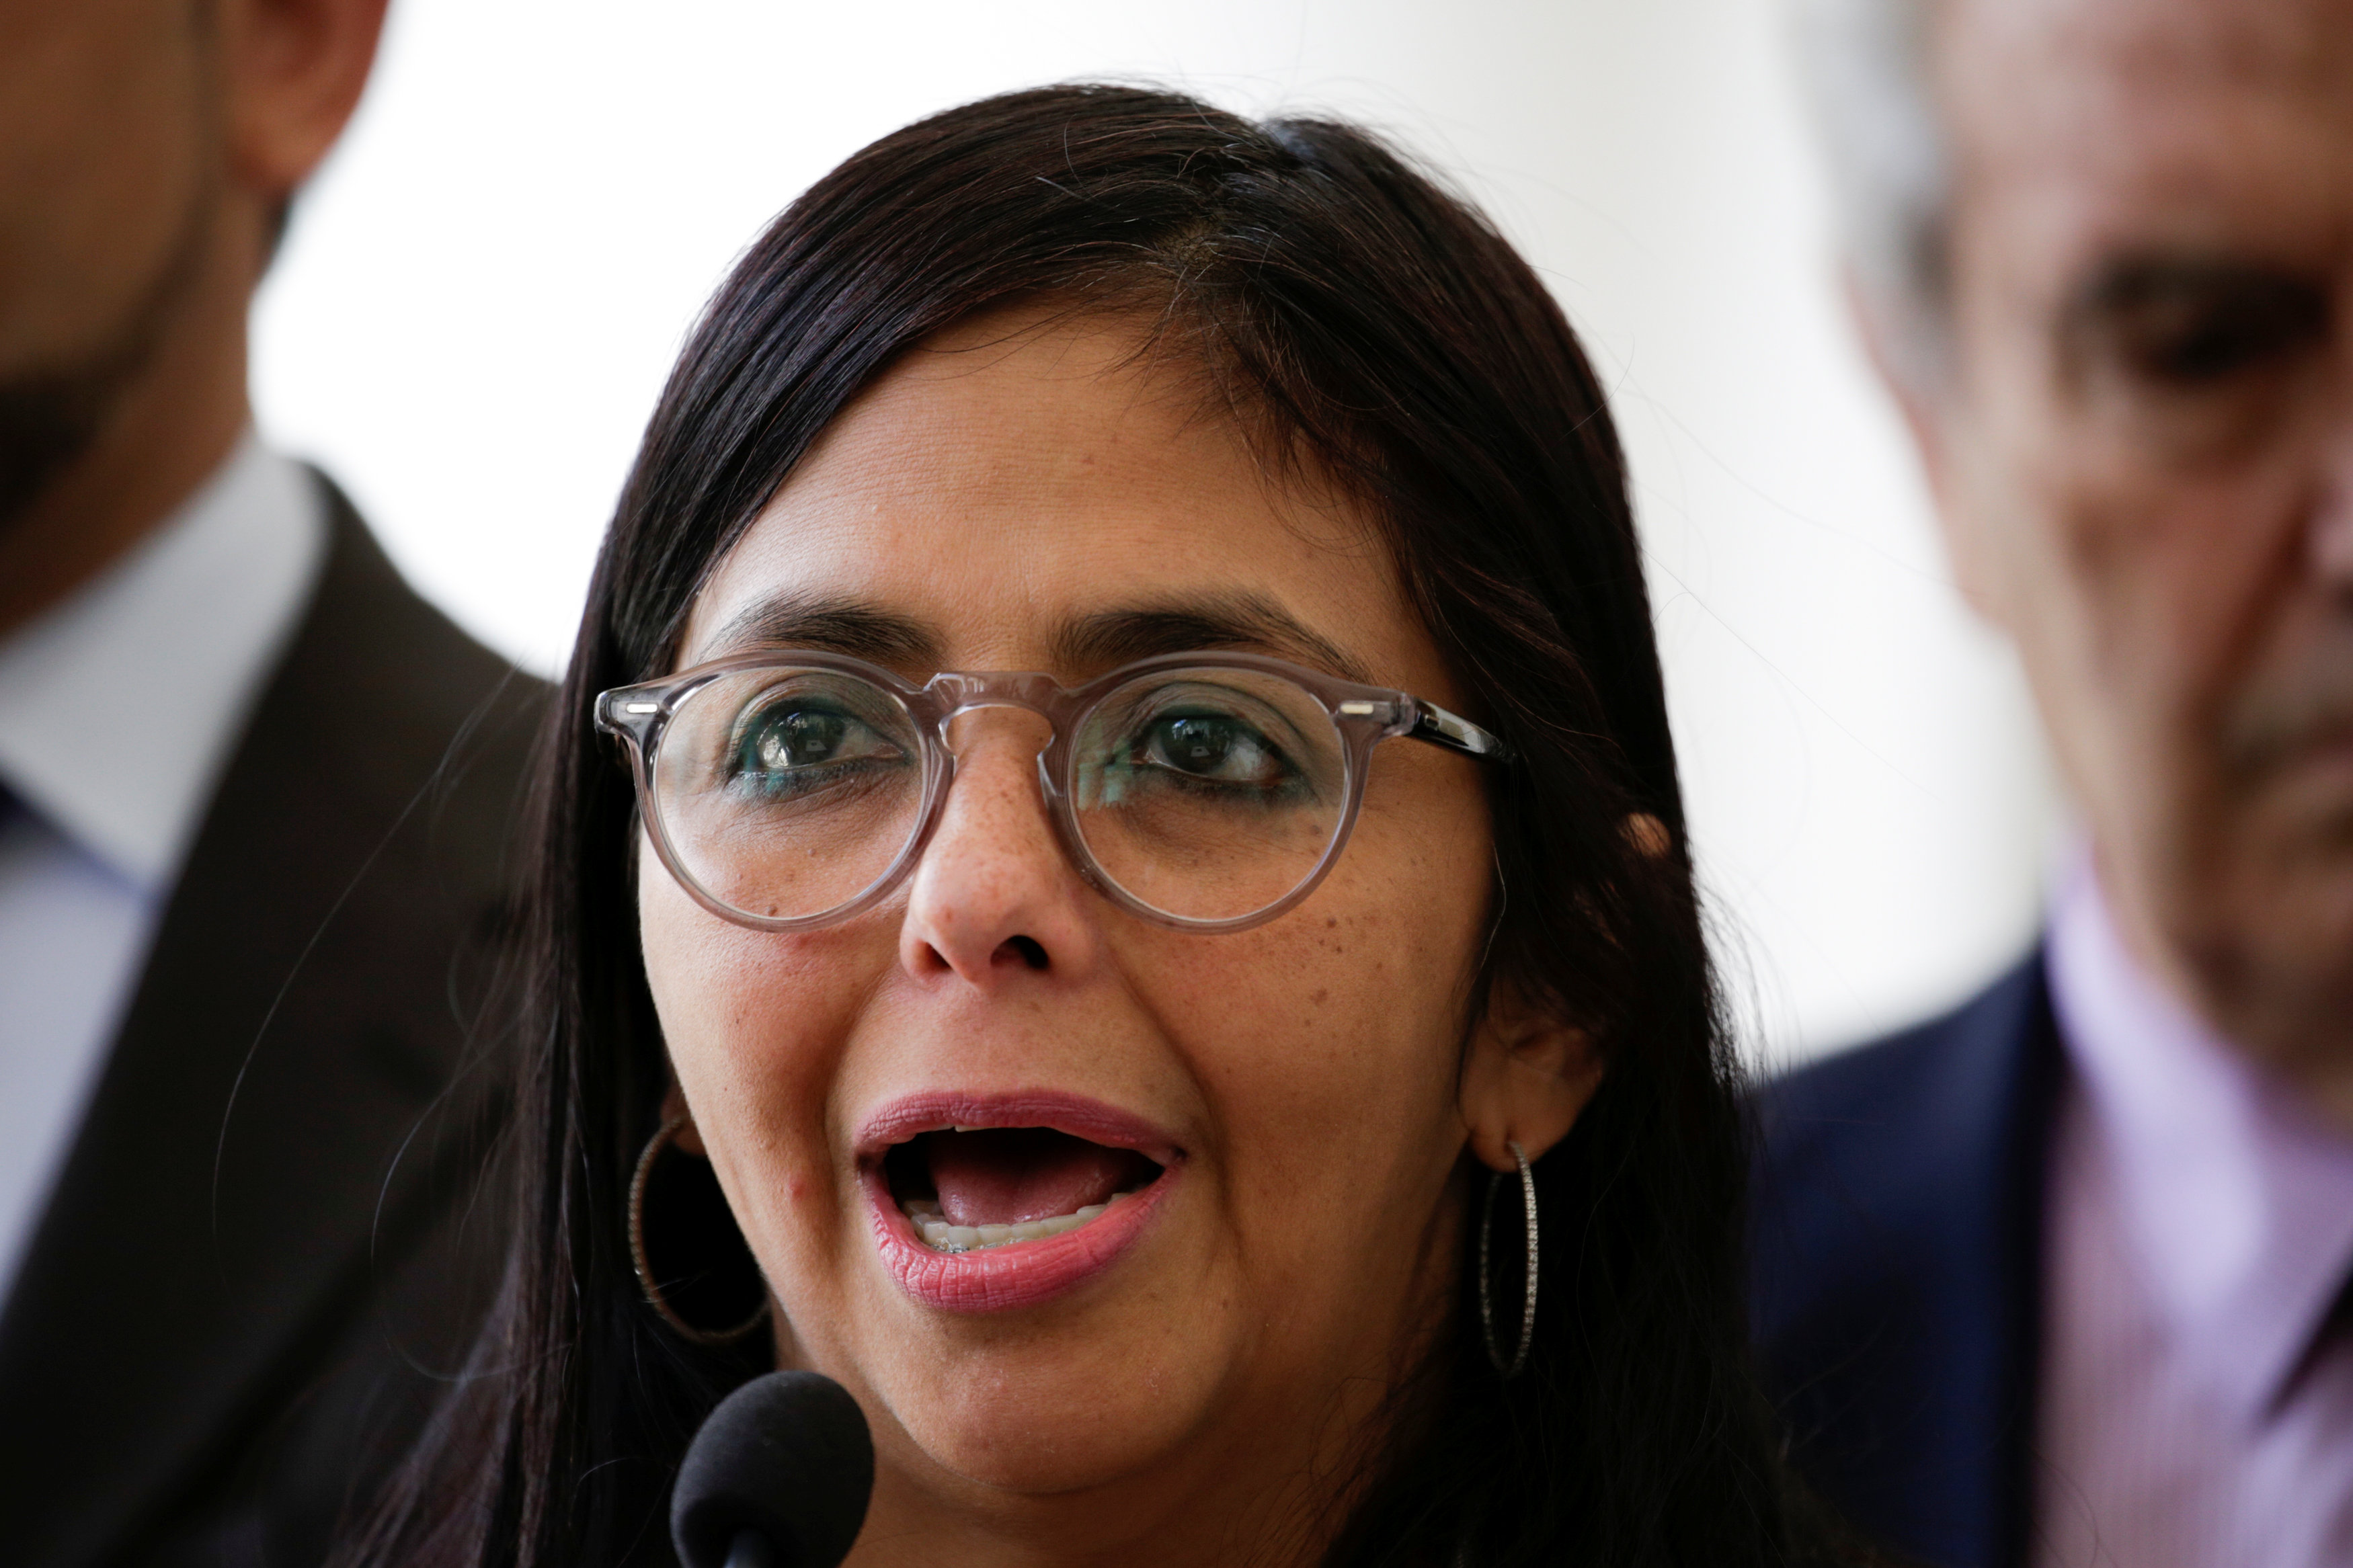 ANC se pone a la orden de Maduro para “consolidar” las elecciones presidenciales